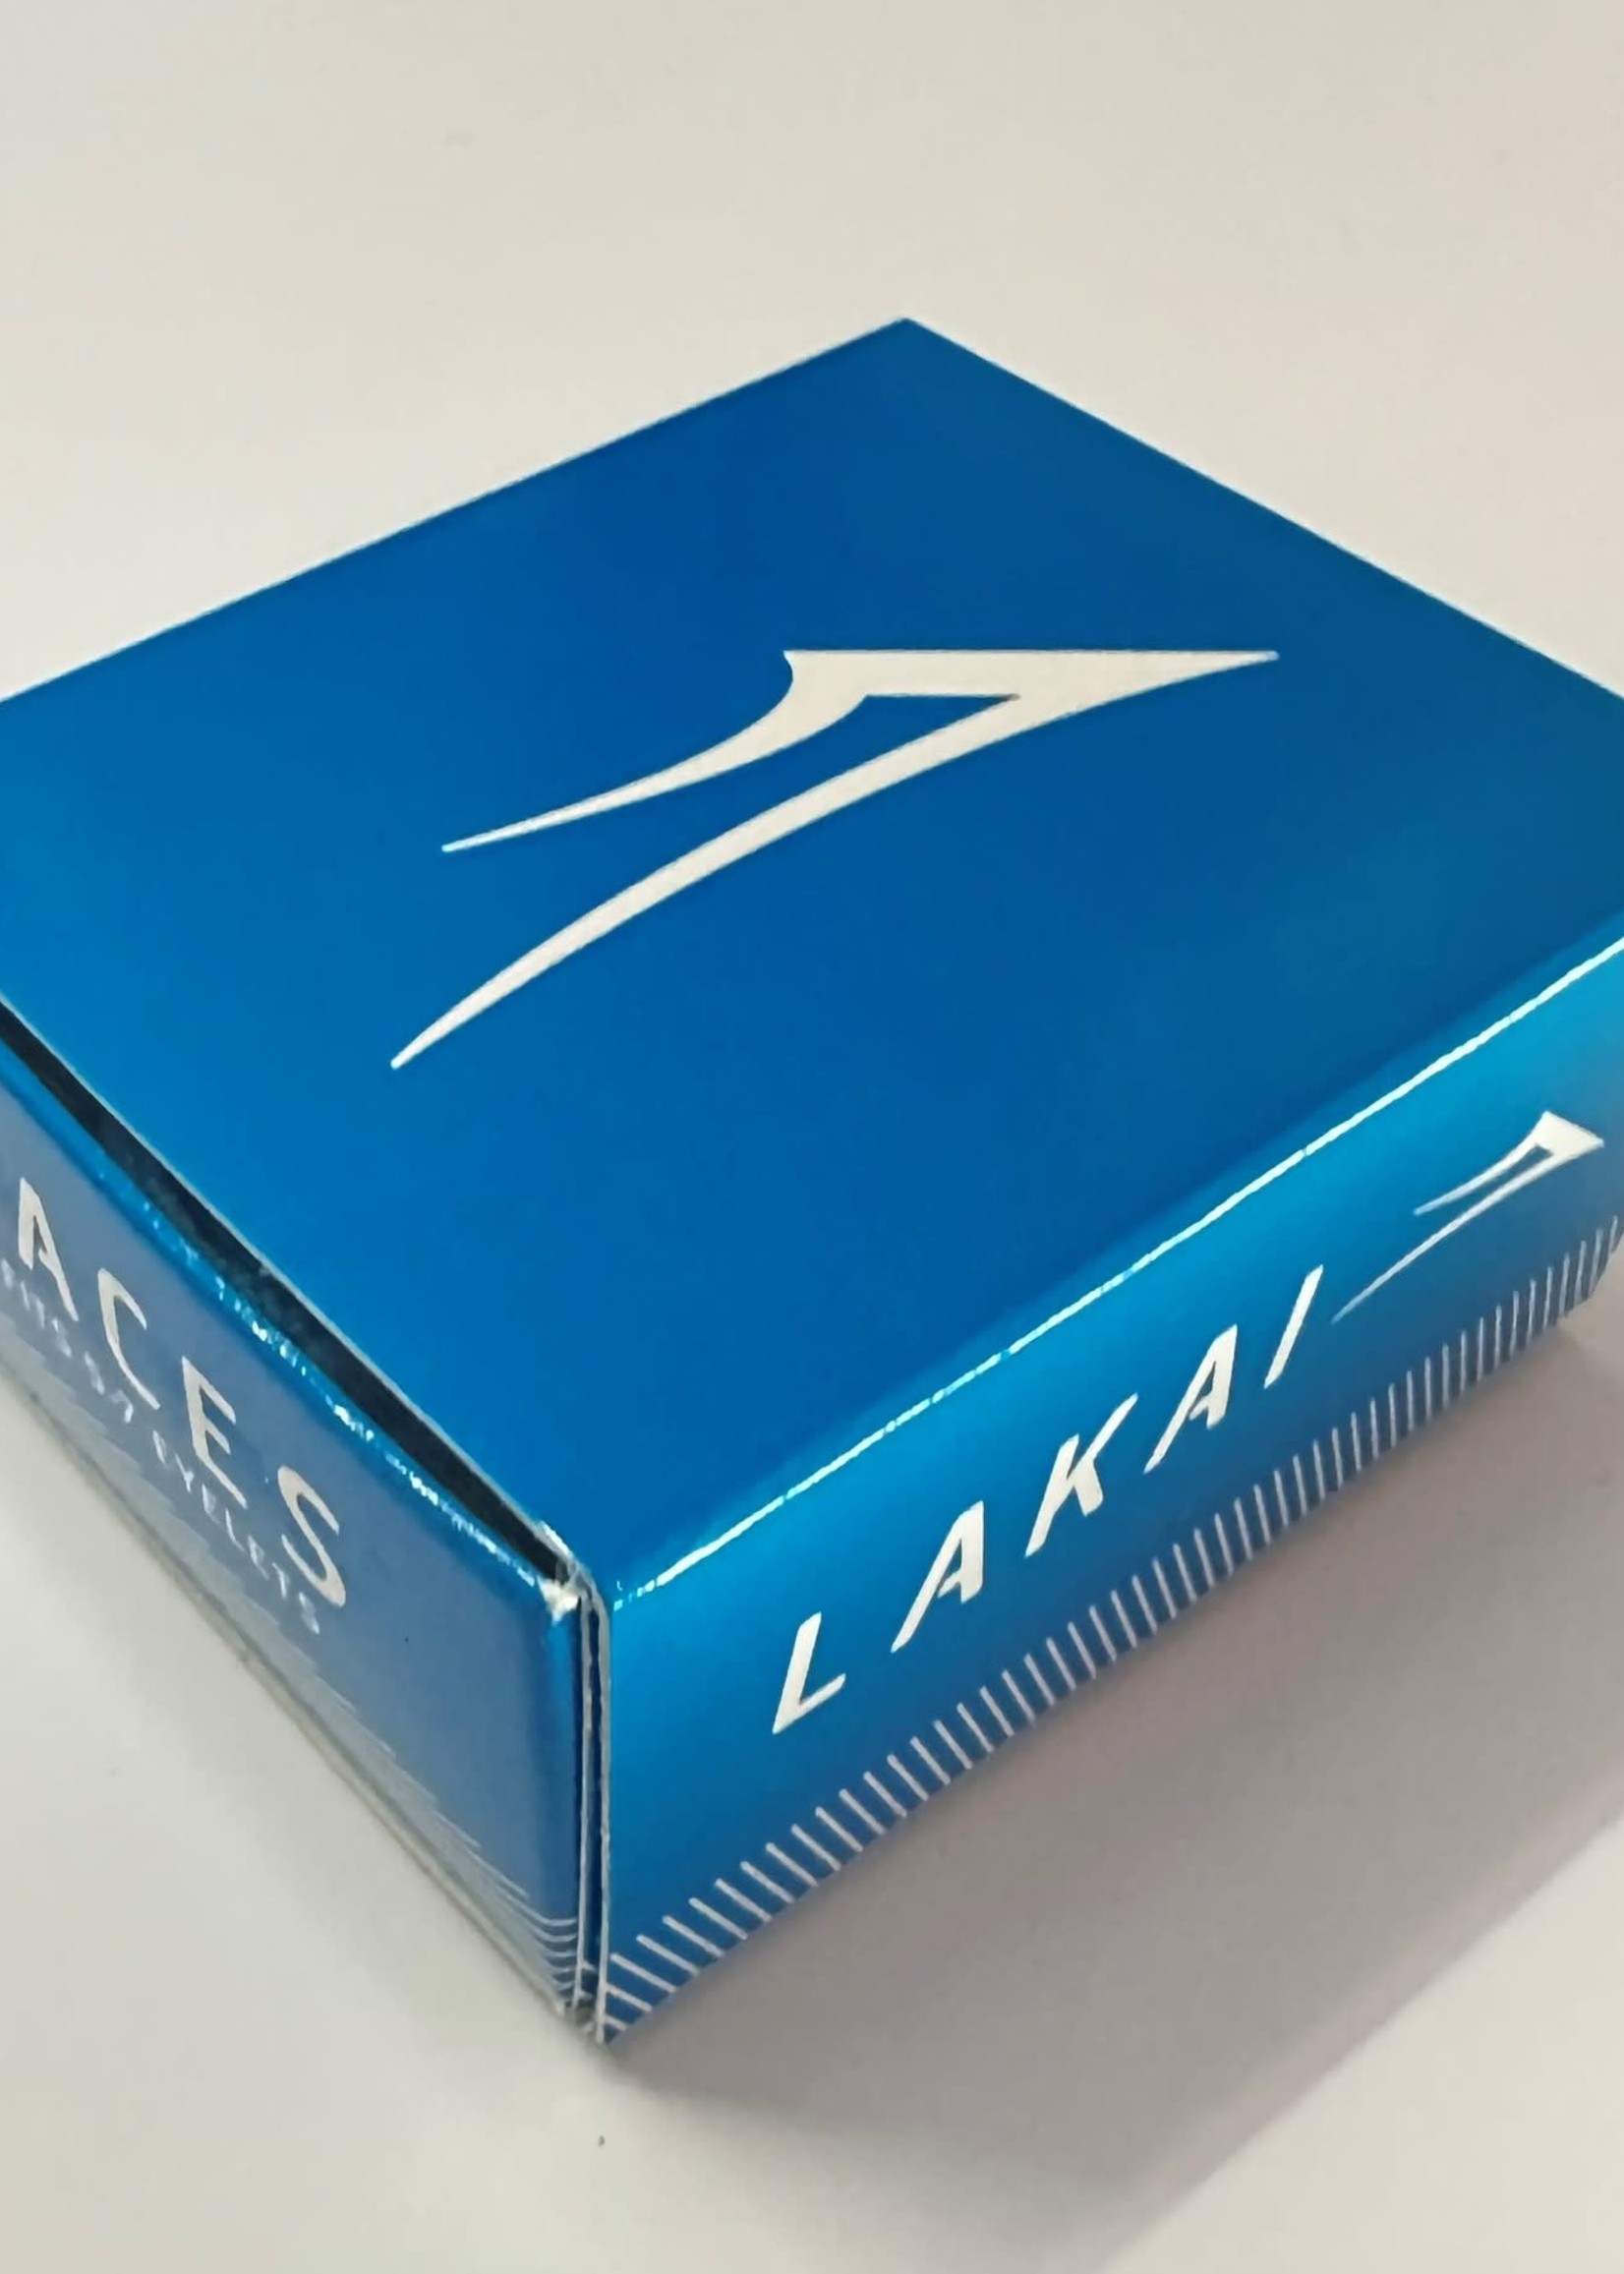 Lakai Ltd Footware Lakai - Laces One Blue/Two White Set